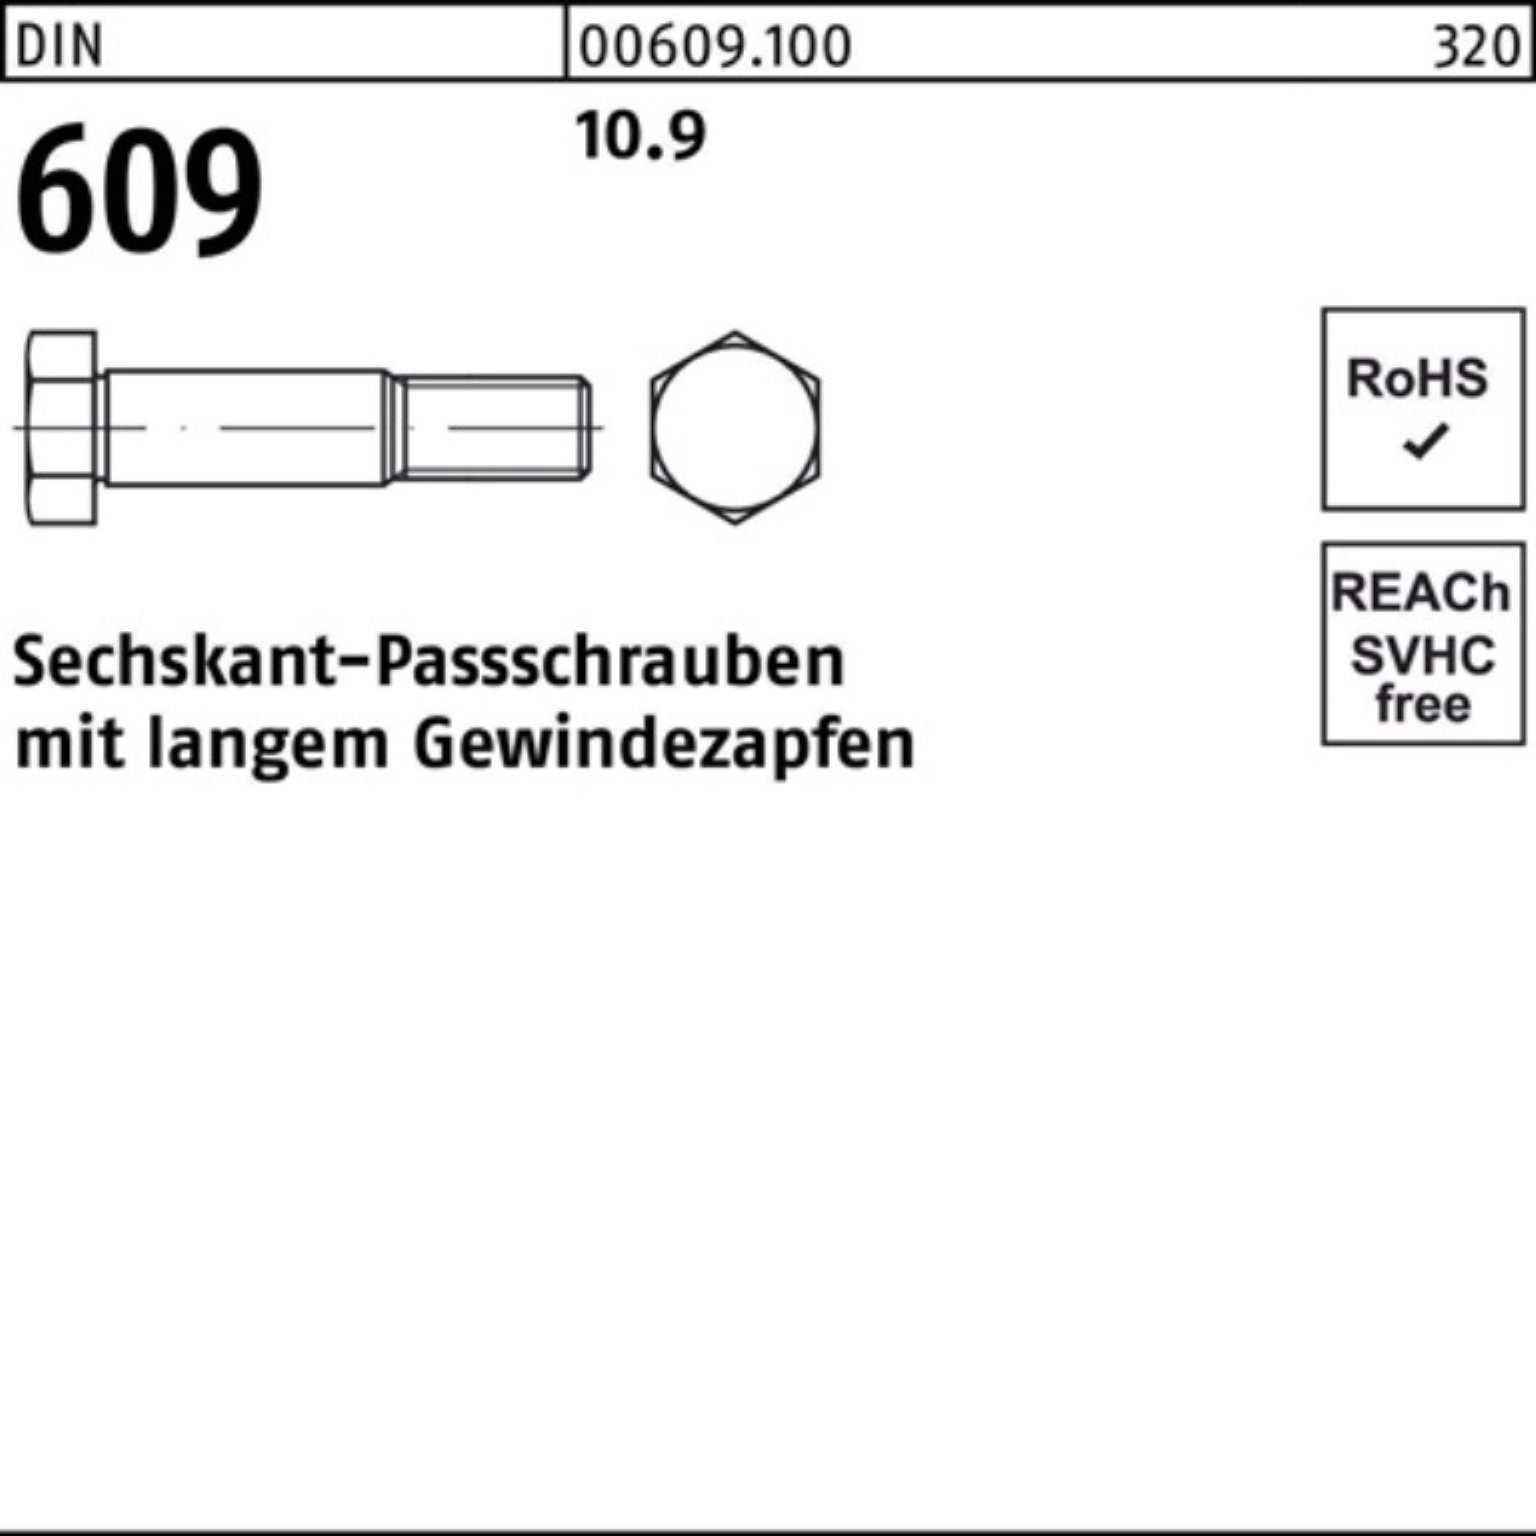 Sechskantpassschraube Pack Reyher langem Schraube M8x 609 1 DIN Gewindezapfen 100er 25